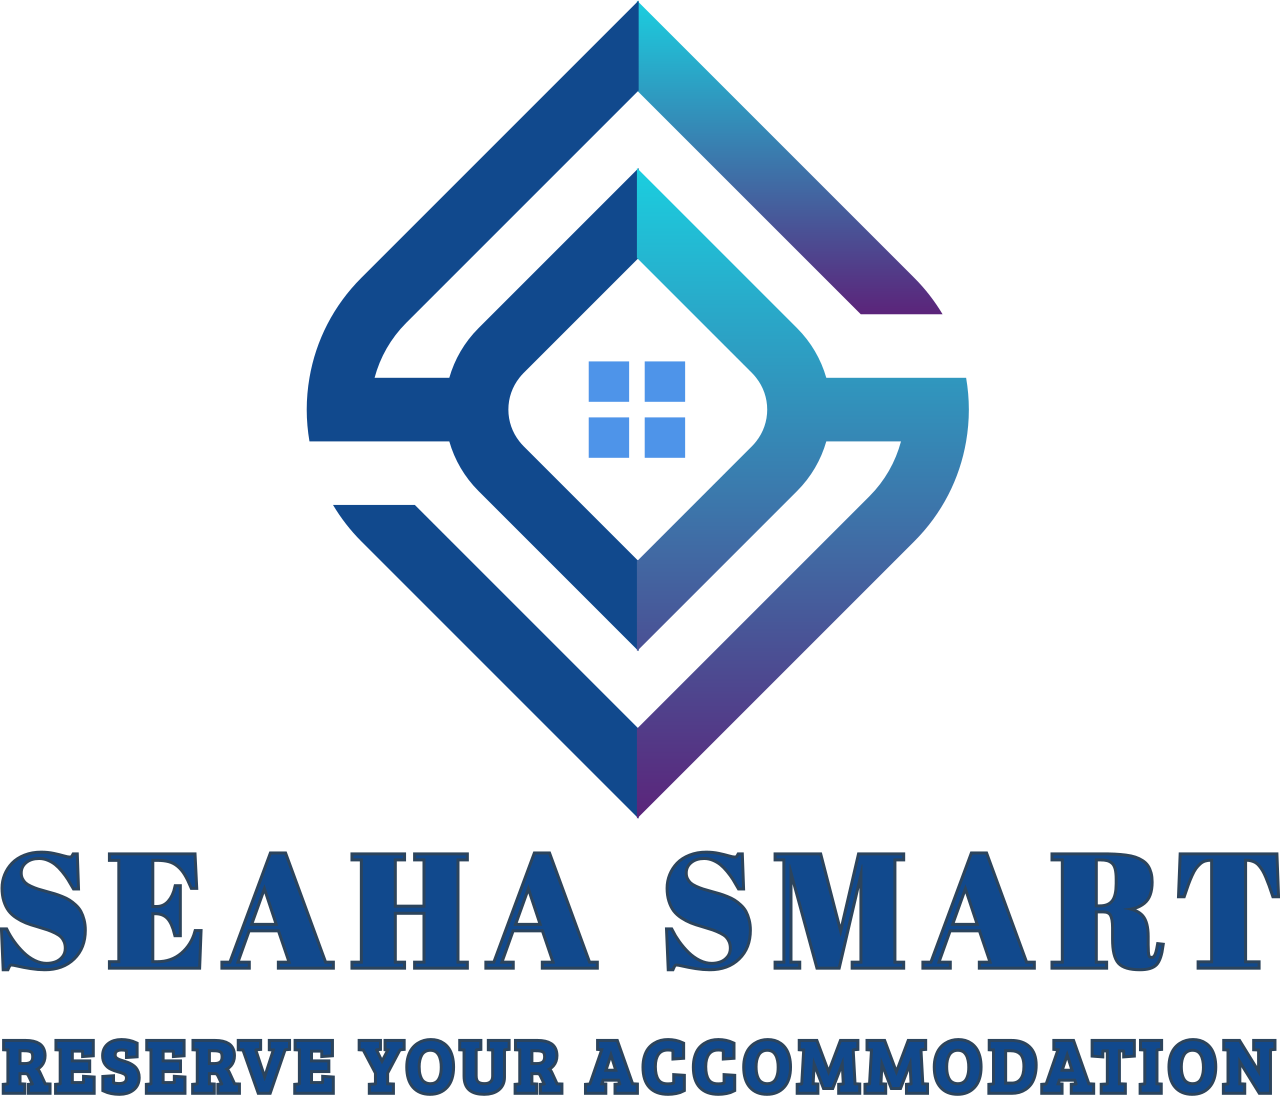 SEAHA SMART's logo